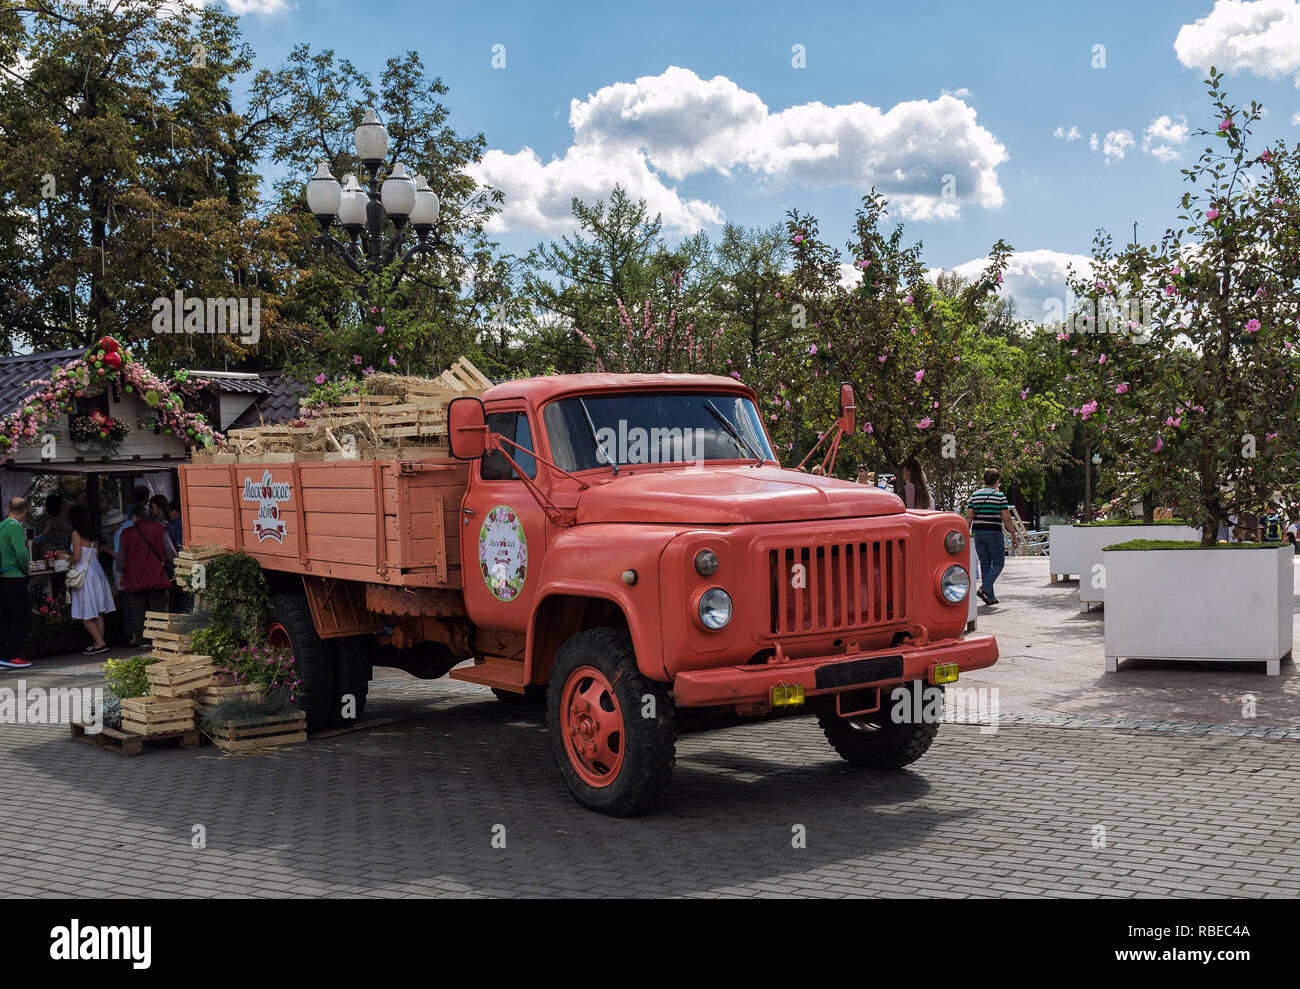 Moskau, Russland - 14. August 2015: Retro Fahrzeug wird als Dekoration auf dem Moskauer Festival pozzy verwendet. Stockfoto